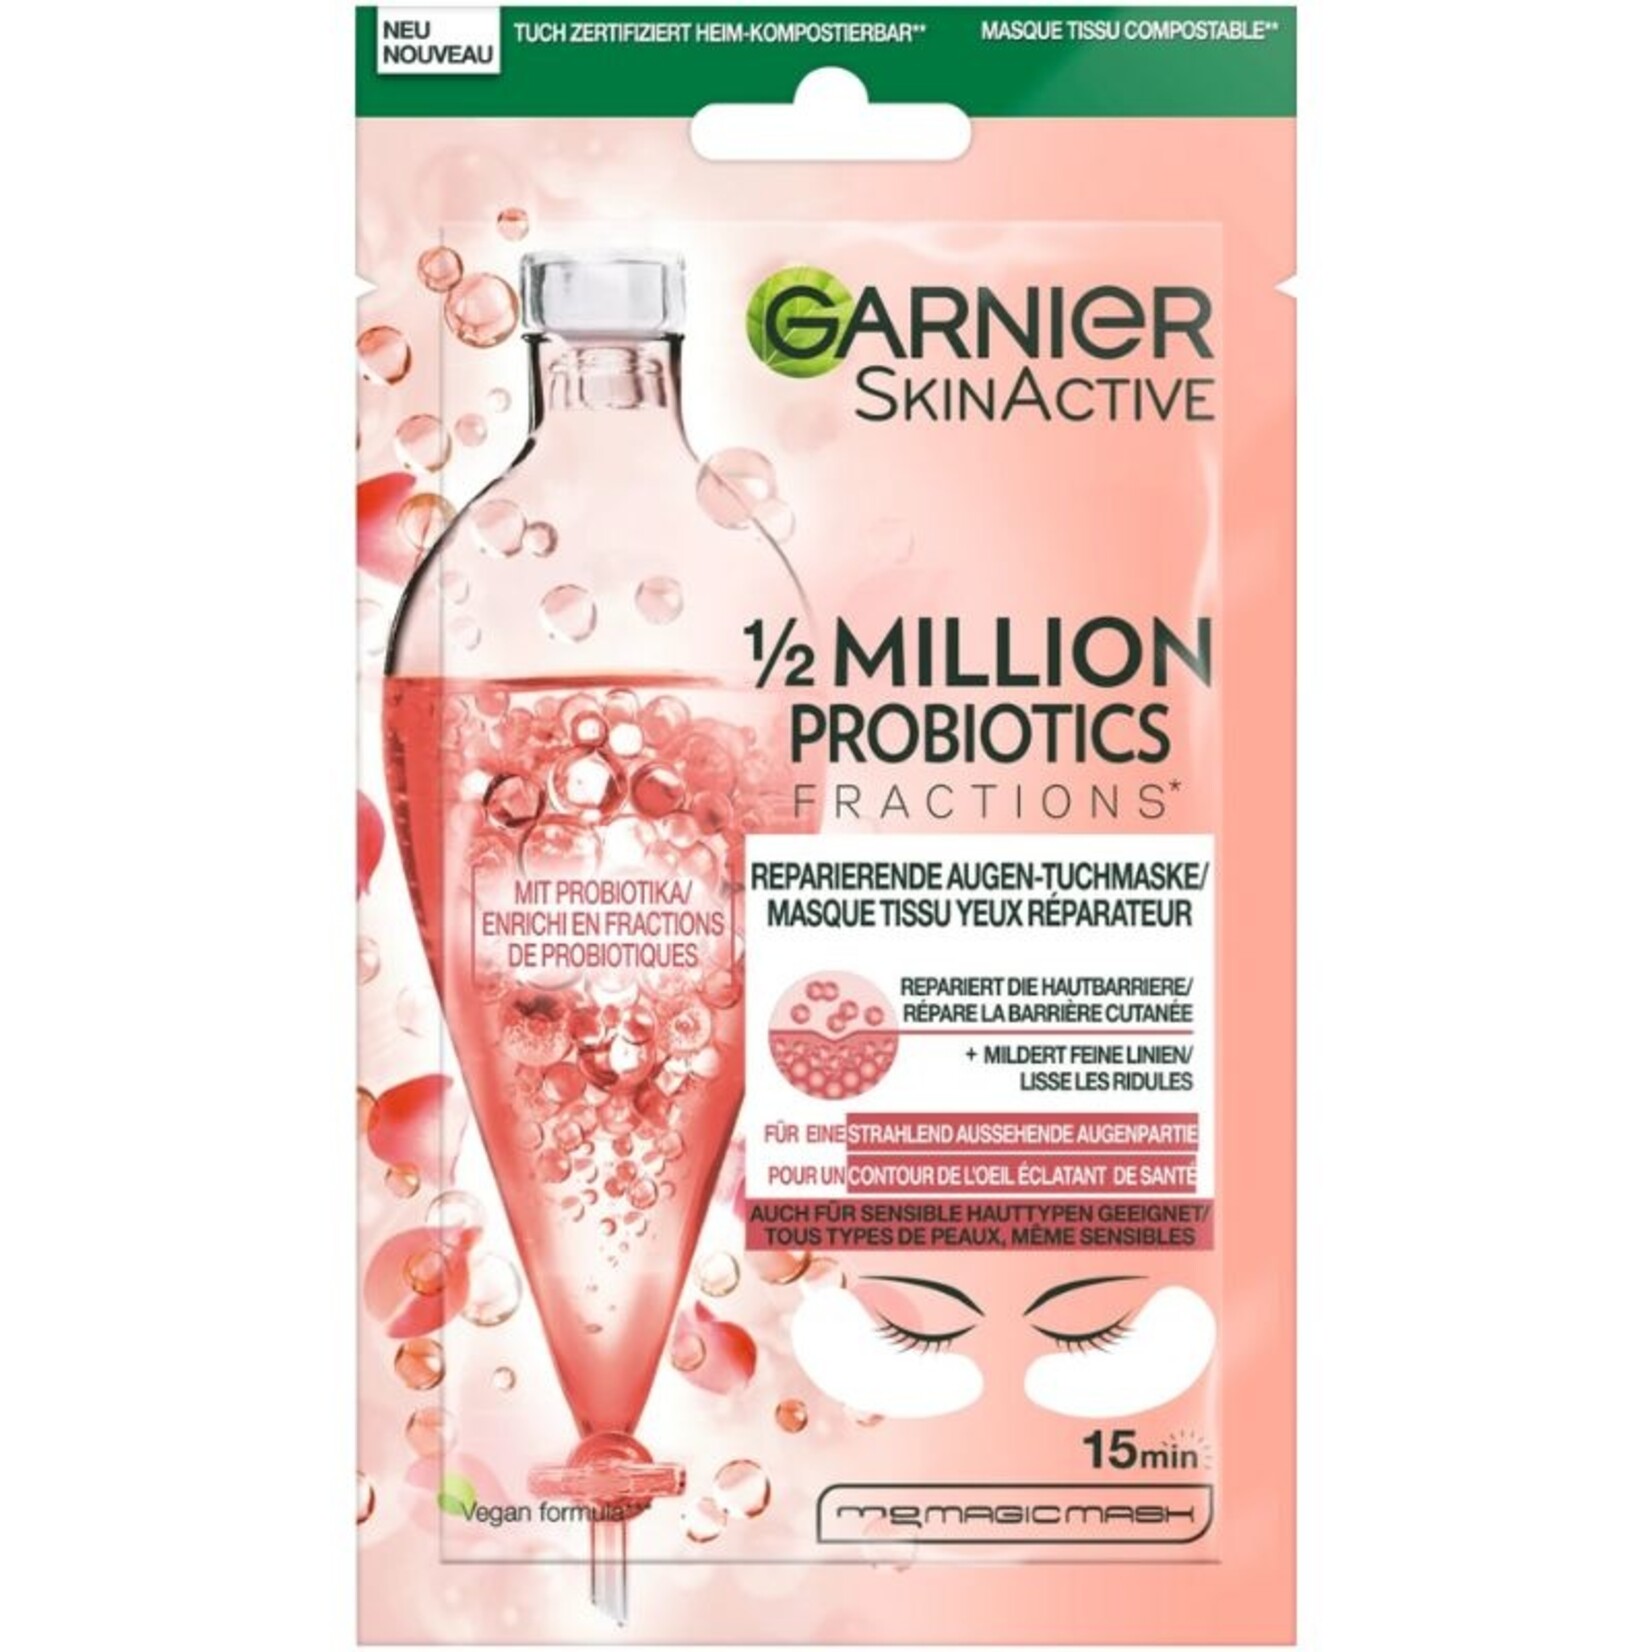 Garnier Million SkinActive - 1/2 Probiotics Augentuchmaske